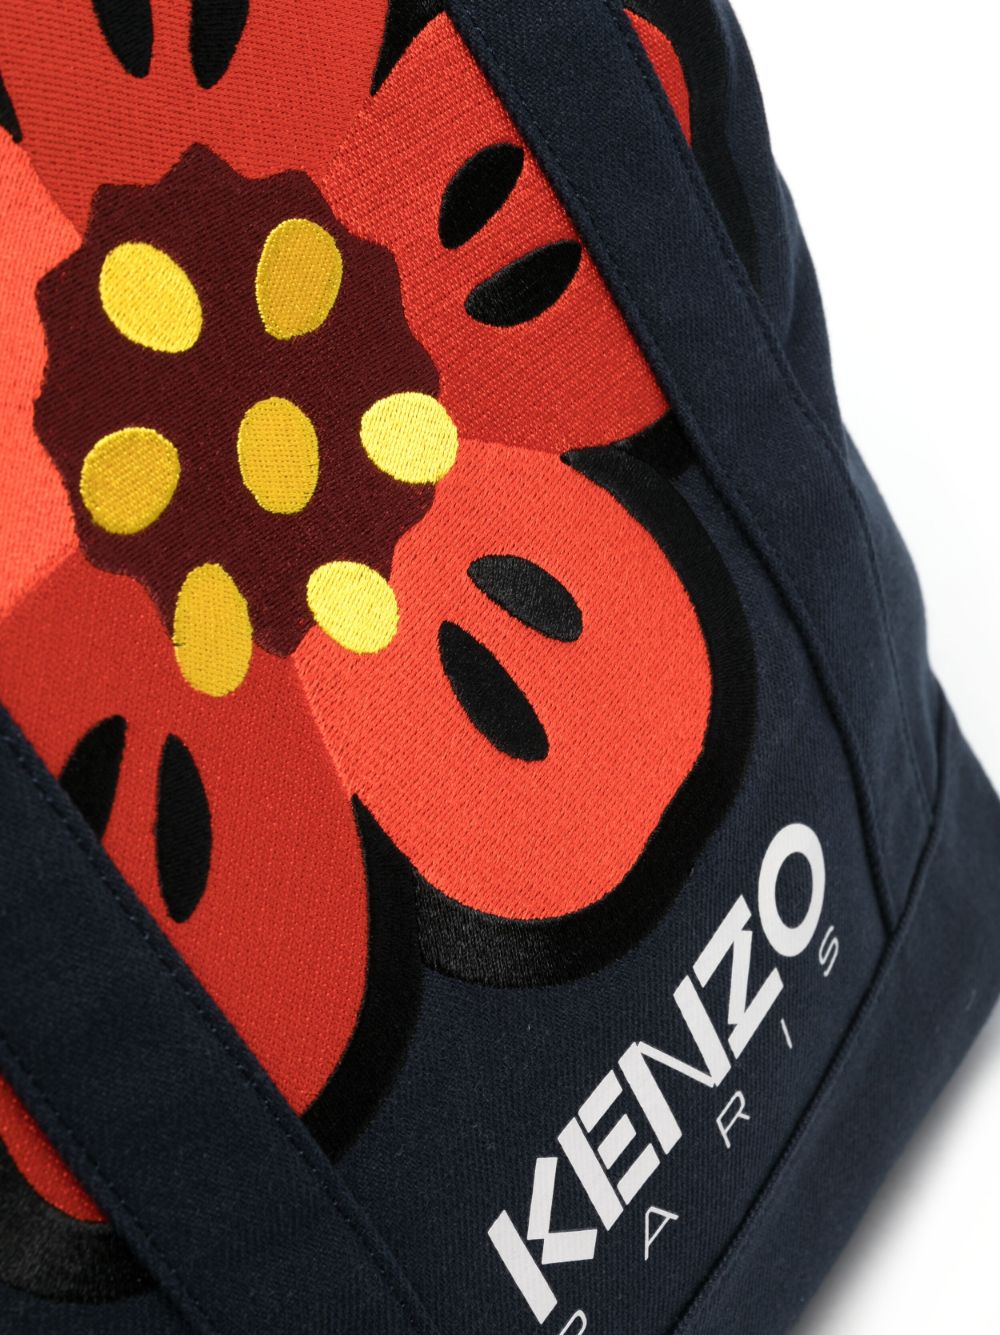 Stylish Kenzo Mini Backpack for Fashion Enthusiasts